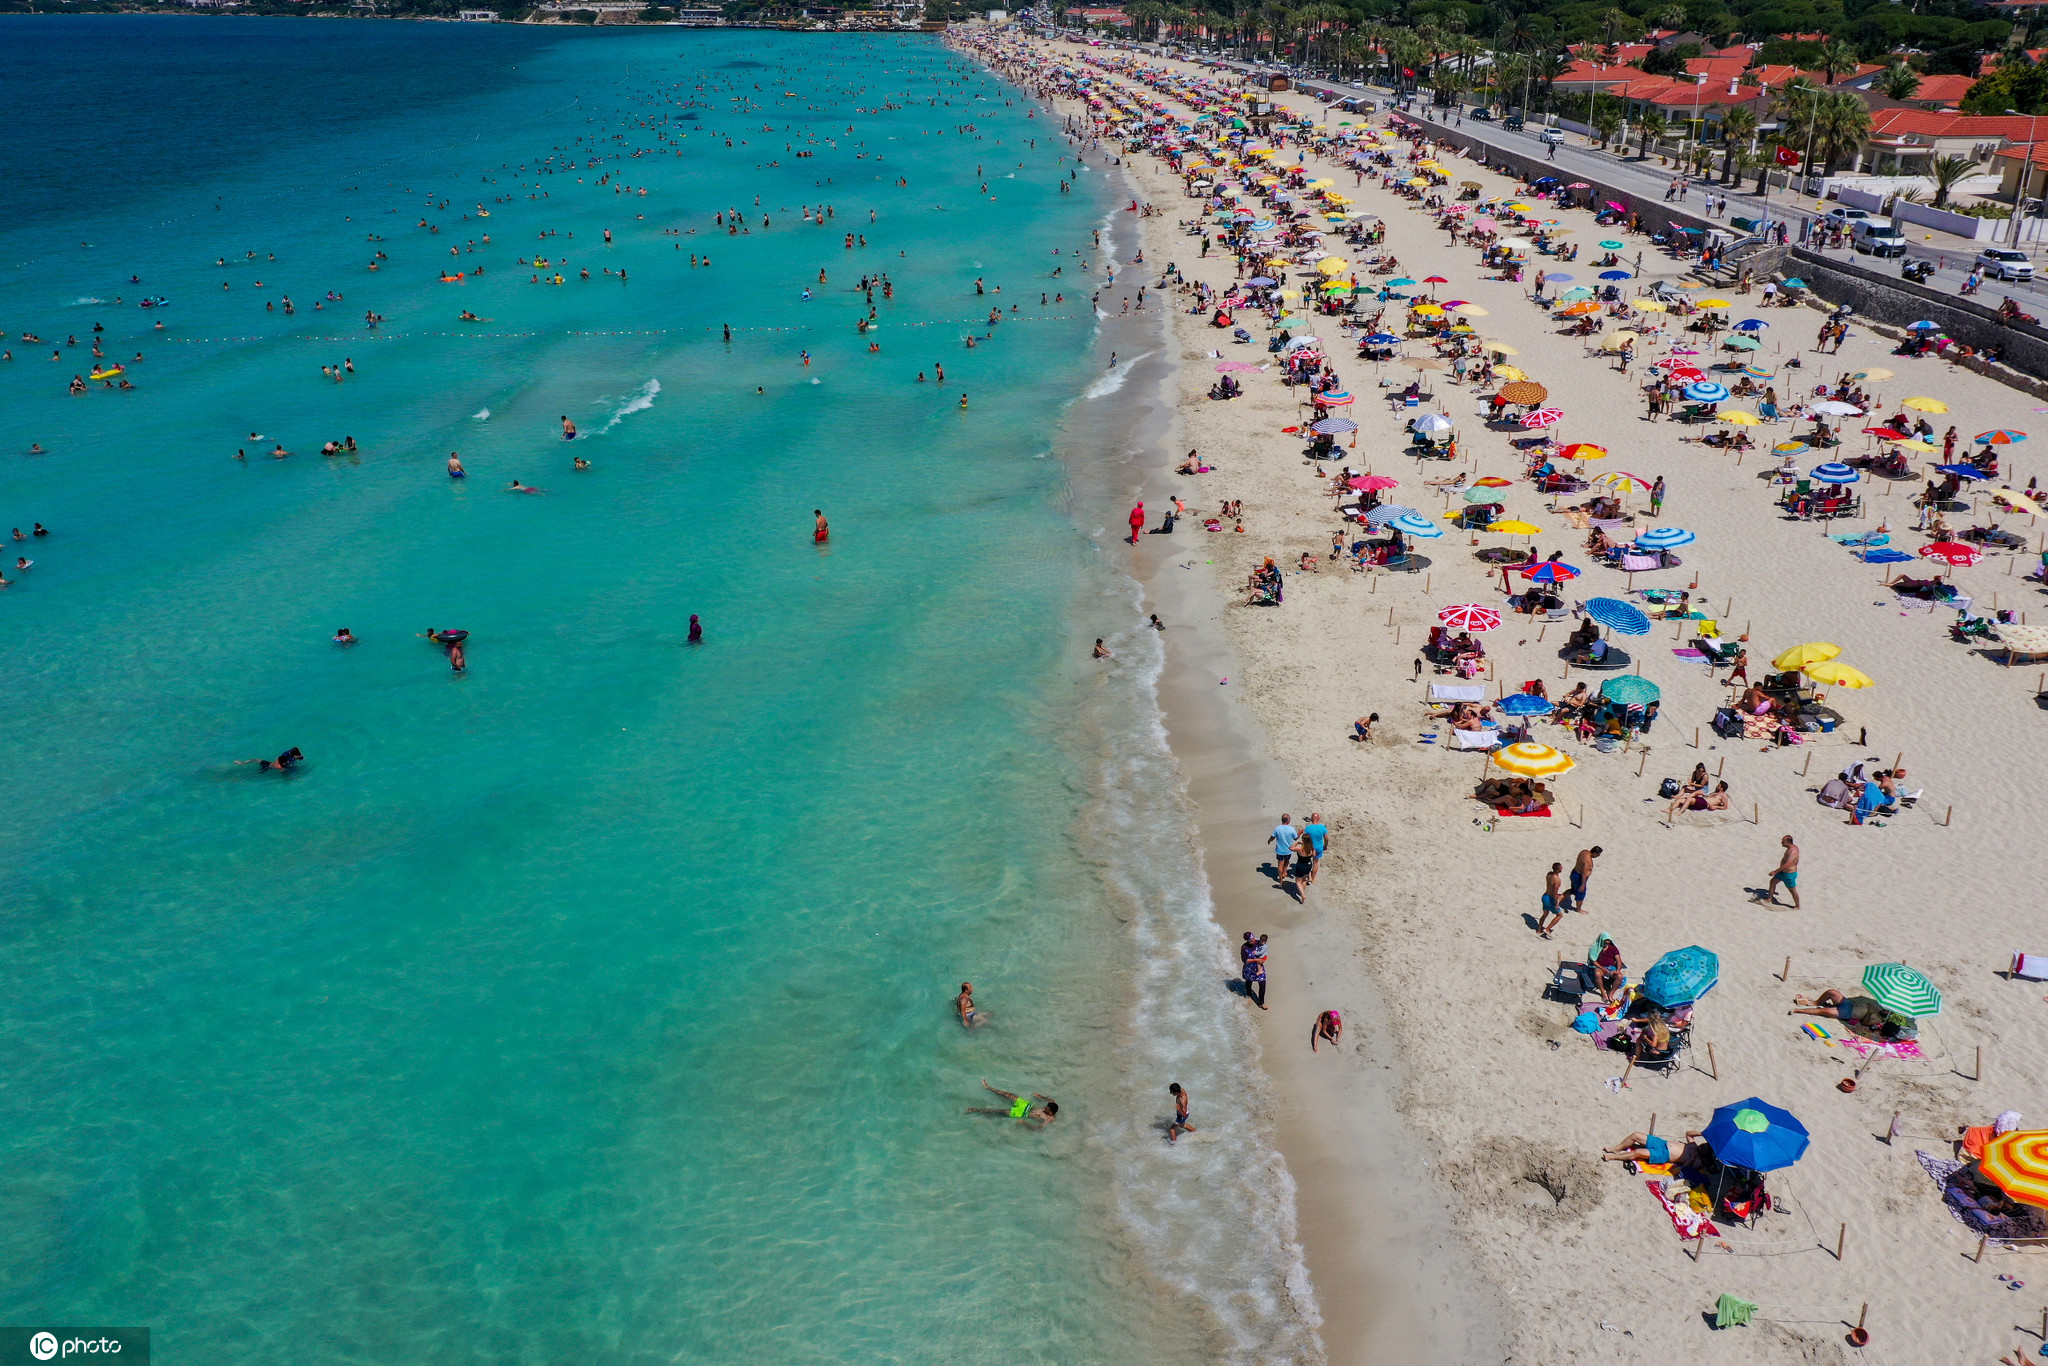 时间2020年7月19日,土耳其伊兹密尔,民众在伊利卡海滩度假,享受日光浴